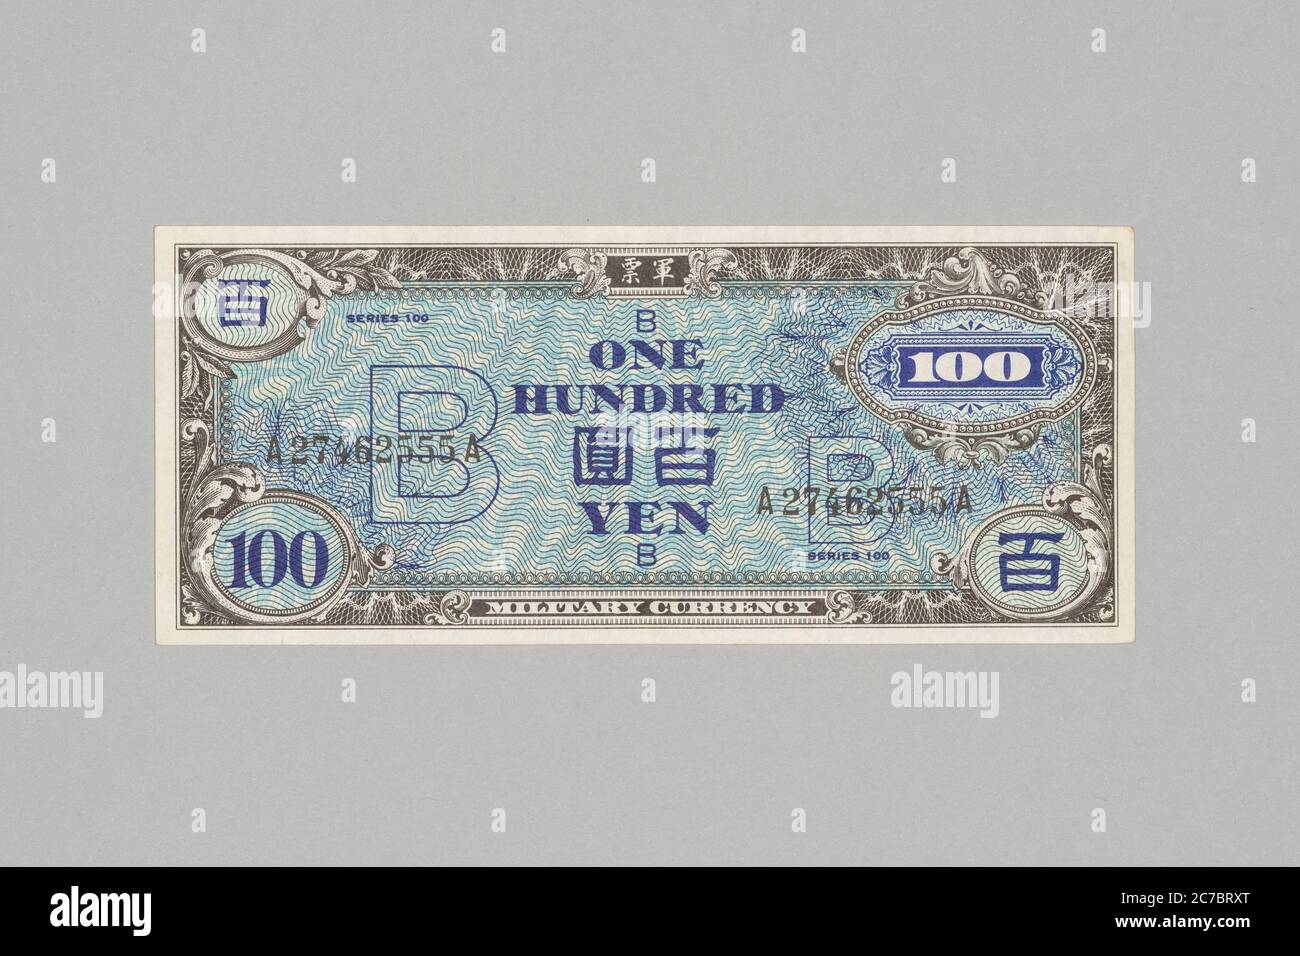 B yen (scriba militare di tipo B) . Questi furono emessi nelle isole Okinawa e Amami, Kagoshima, Giappone tra ( 1945–1958 ) sotto l'occupazione delle forze statunitensi dopo la seconda guerra mondiale. Collezione privata. Foto Stock